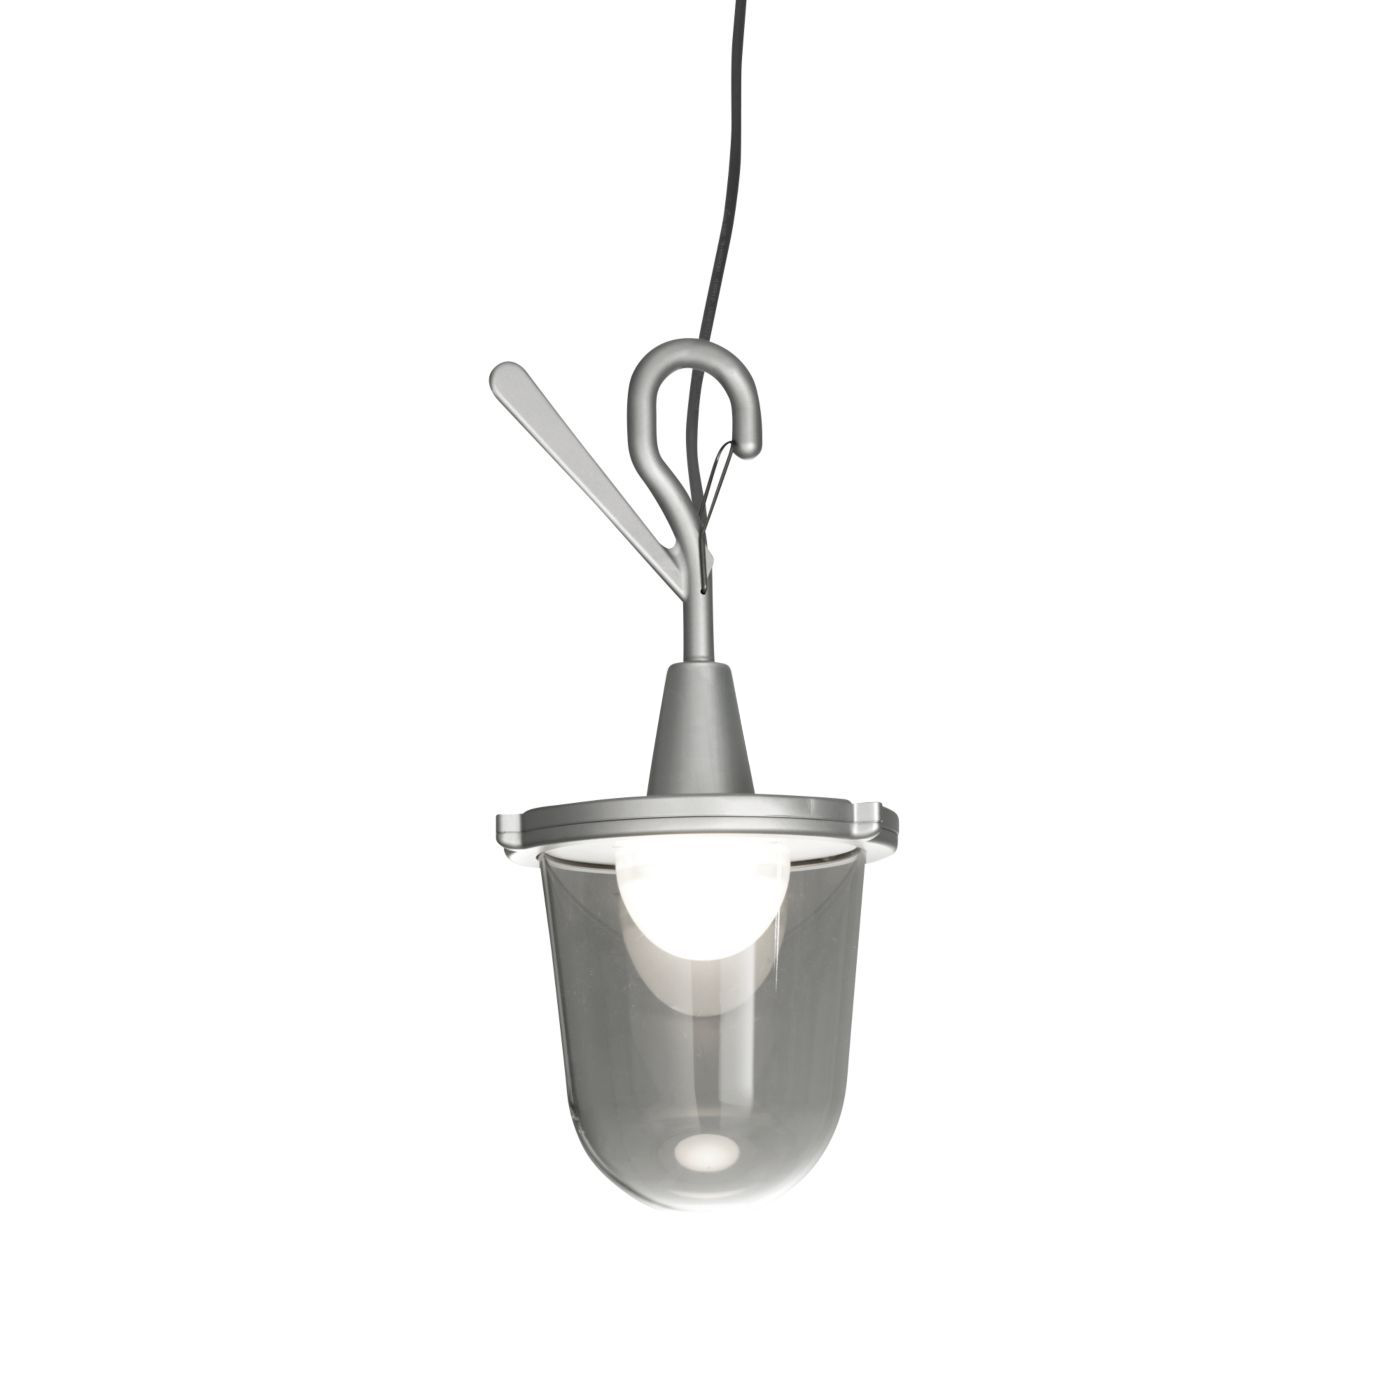 ARTEMIDE lampe avec crochet TOLOMEO LAMPIONE OUTDOOR (Gris - Aluminium poli)